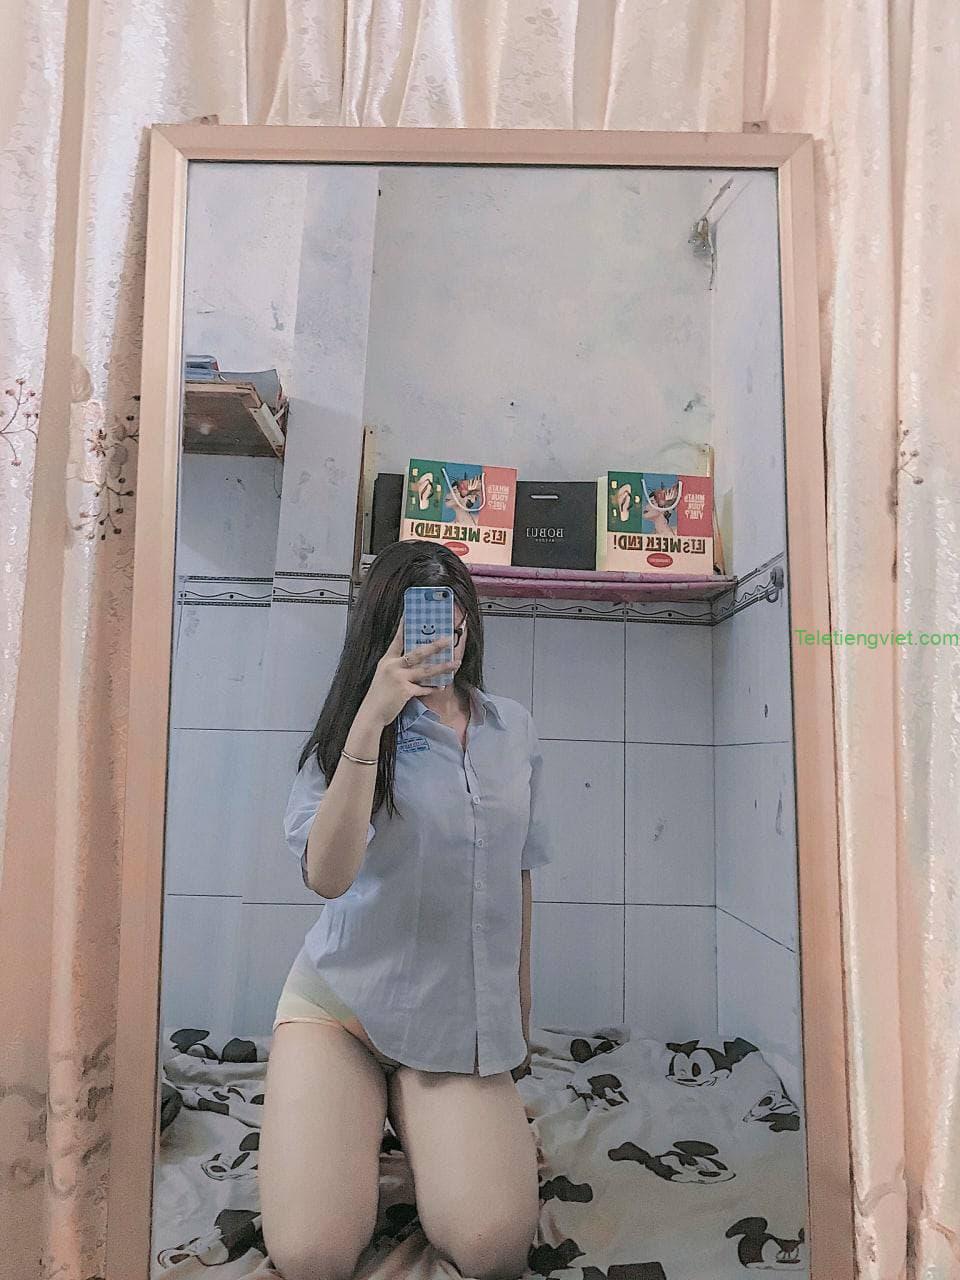 Ảnh 18+ nóng bỏng của Hot girl Việt Nam